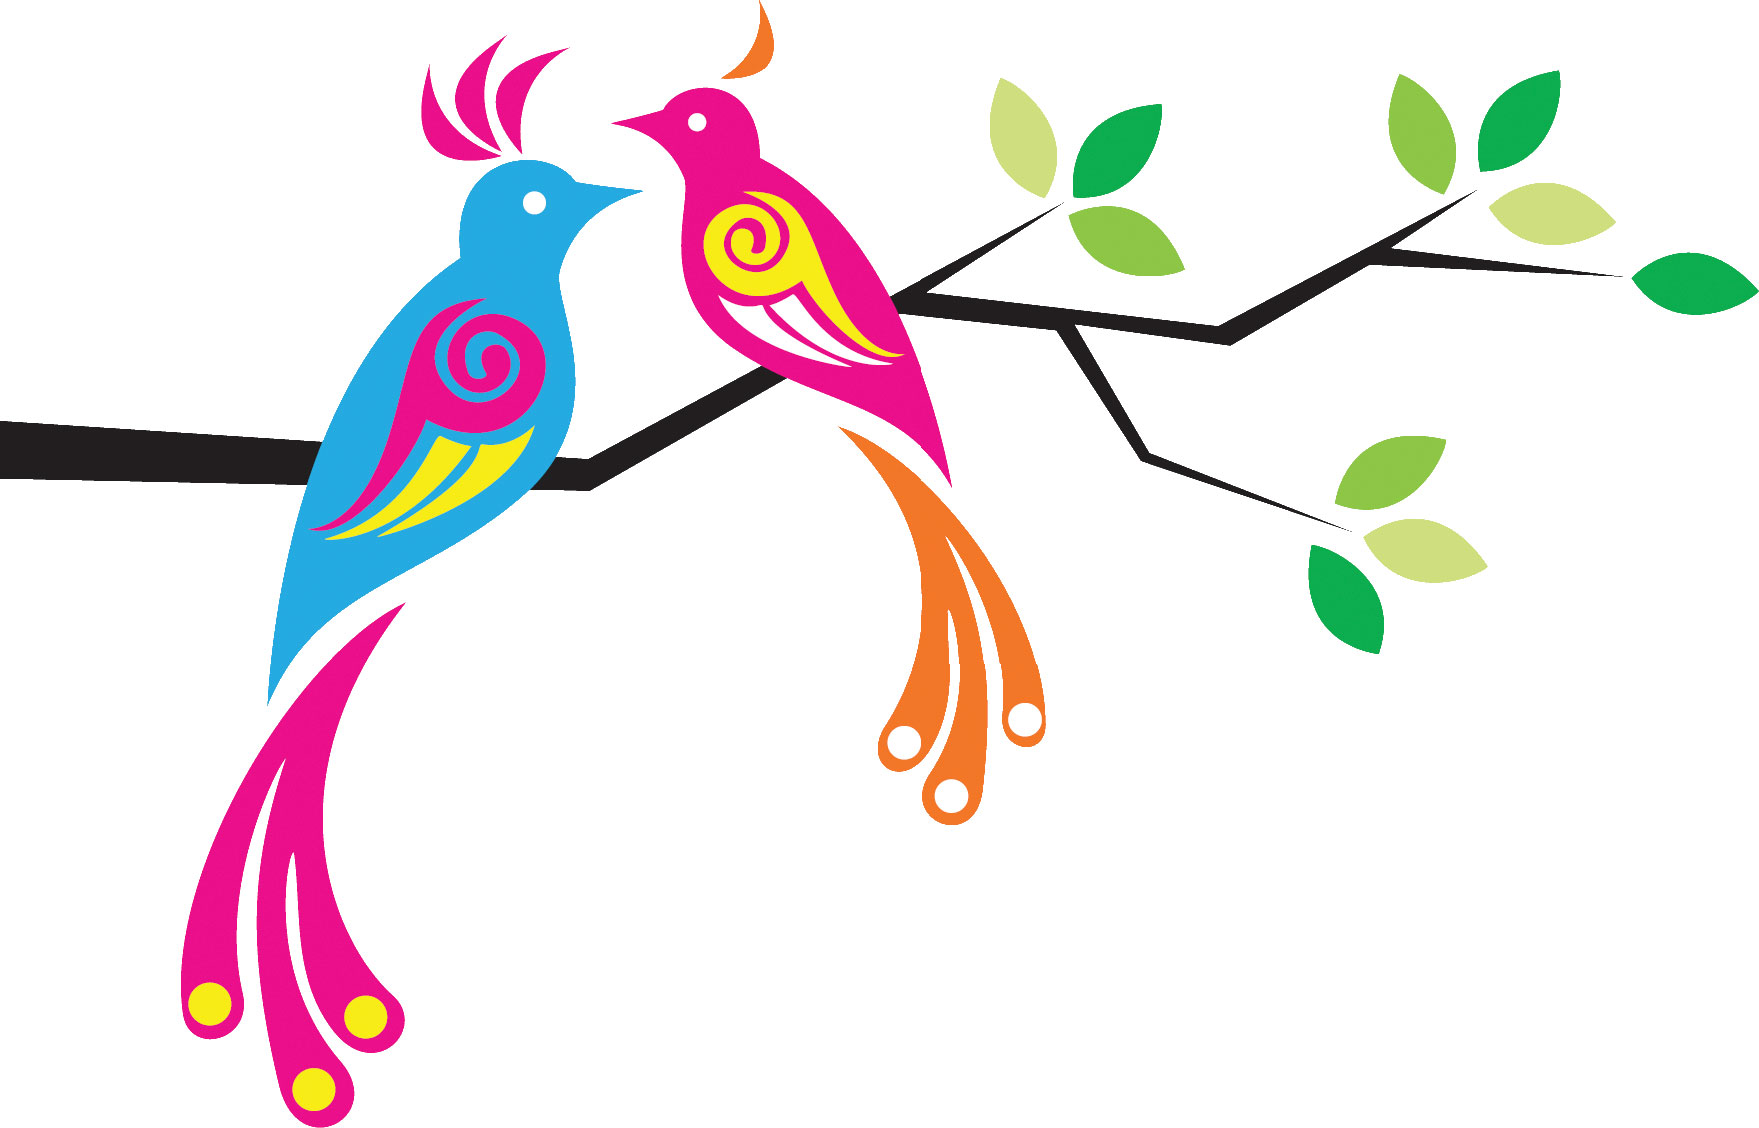 ポップでかわいい花のイラスト フリー素材 No 342 枝葉と鳥のイラスト 小鳥のイラスト画像 17年酉年年賀状 かわいい小鳥のイラスト Naver まとめ